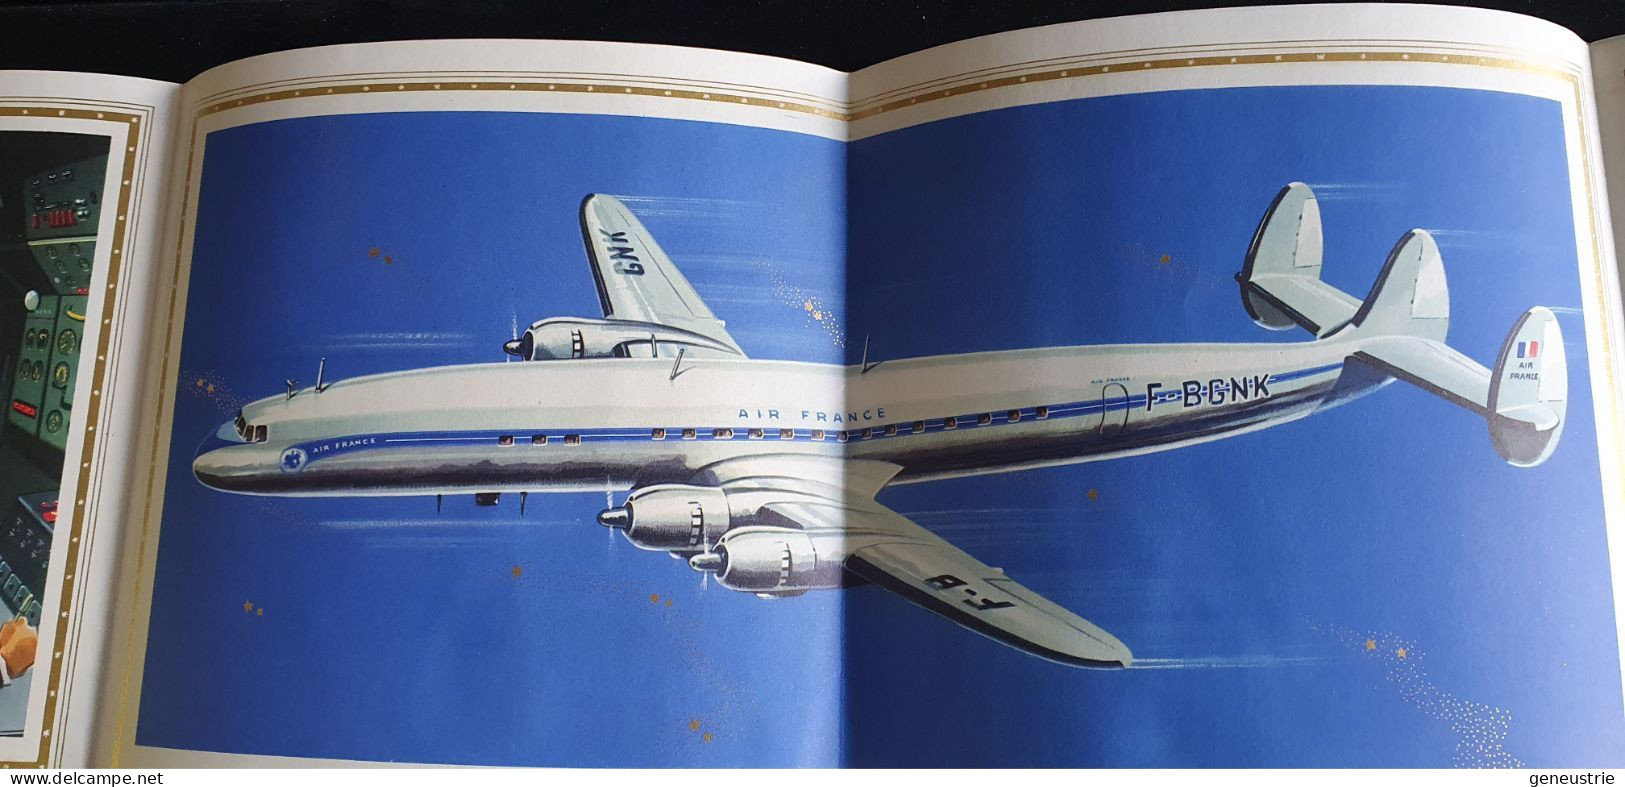 Très Belle Publicité Années 50 "Air France - Avion Super Constellation - Lockeed" - Publicidad